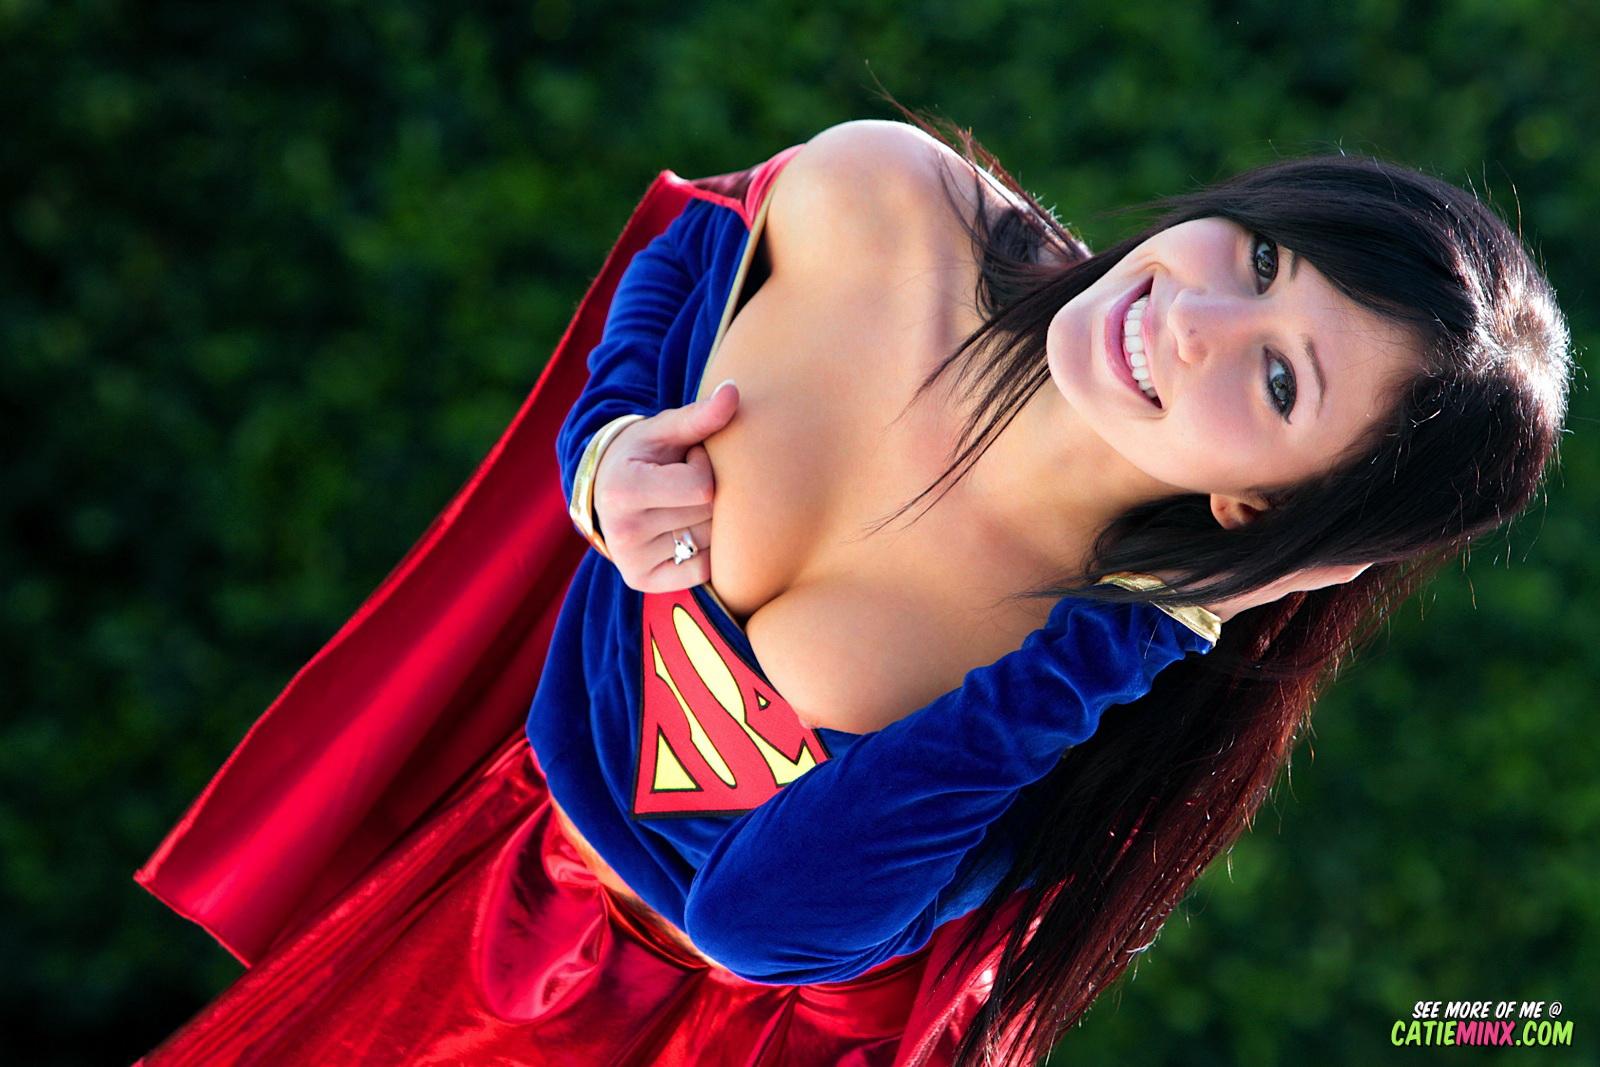 Sanftmütige Streberin Catie Minx enthüllt ihre super-frechen Kräfte als Supergirl
 #53722938